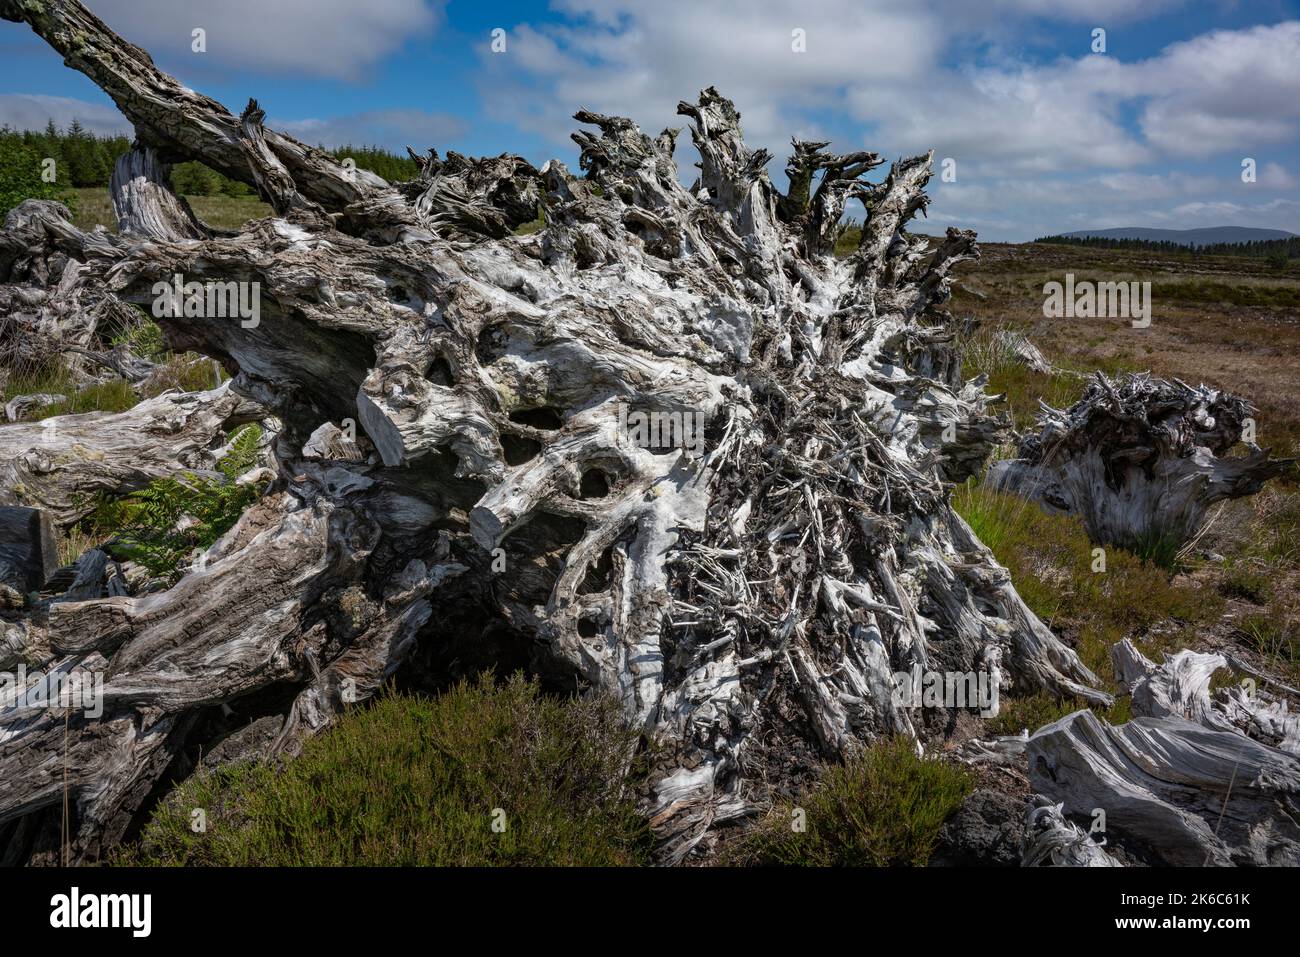 Torba tagliata a macchina in Irlanda. Scossi emergono, palude quercia, resti di una foresta che deve essere stato qui centinaia o migliaia di anni fa. Foto Stock